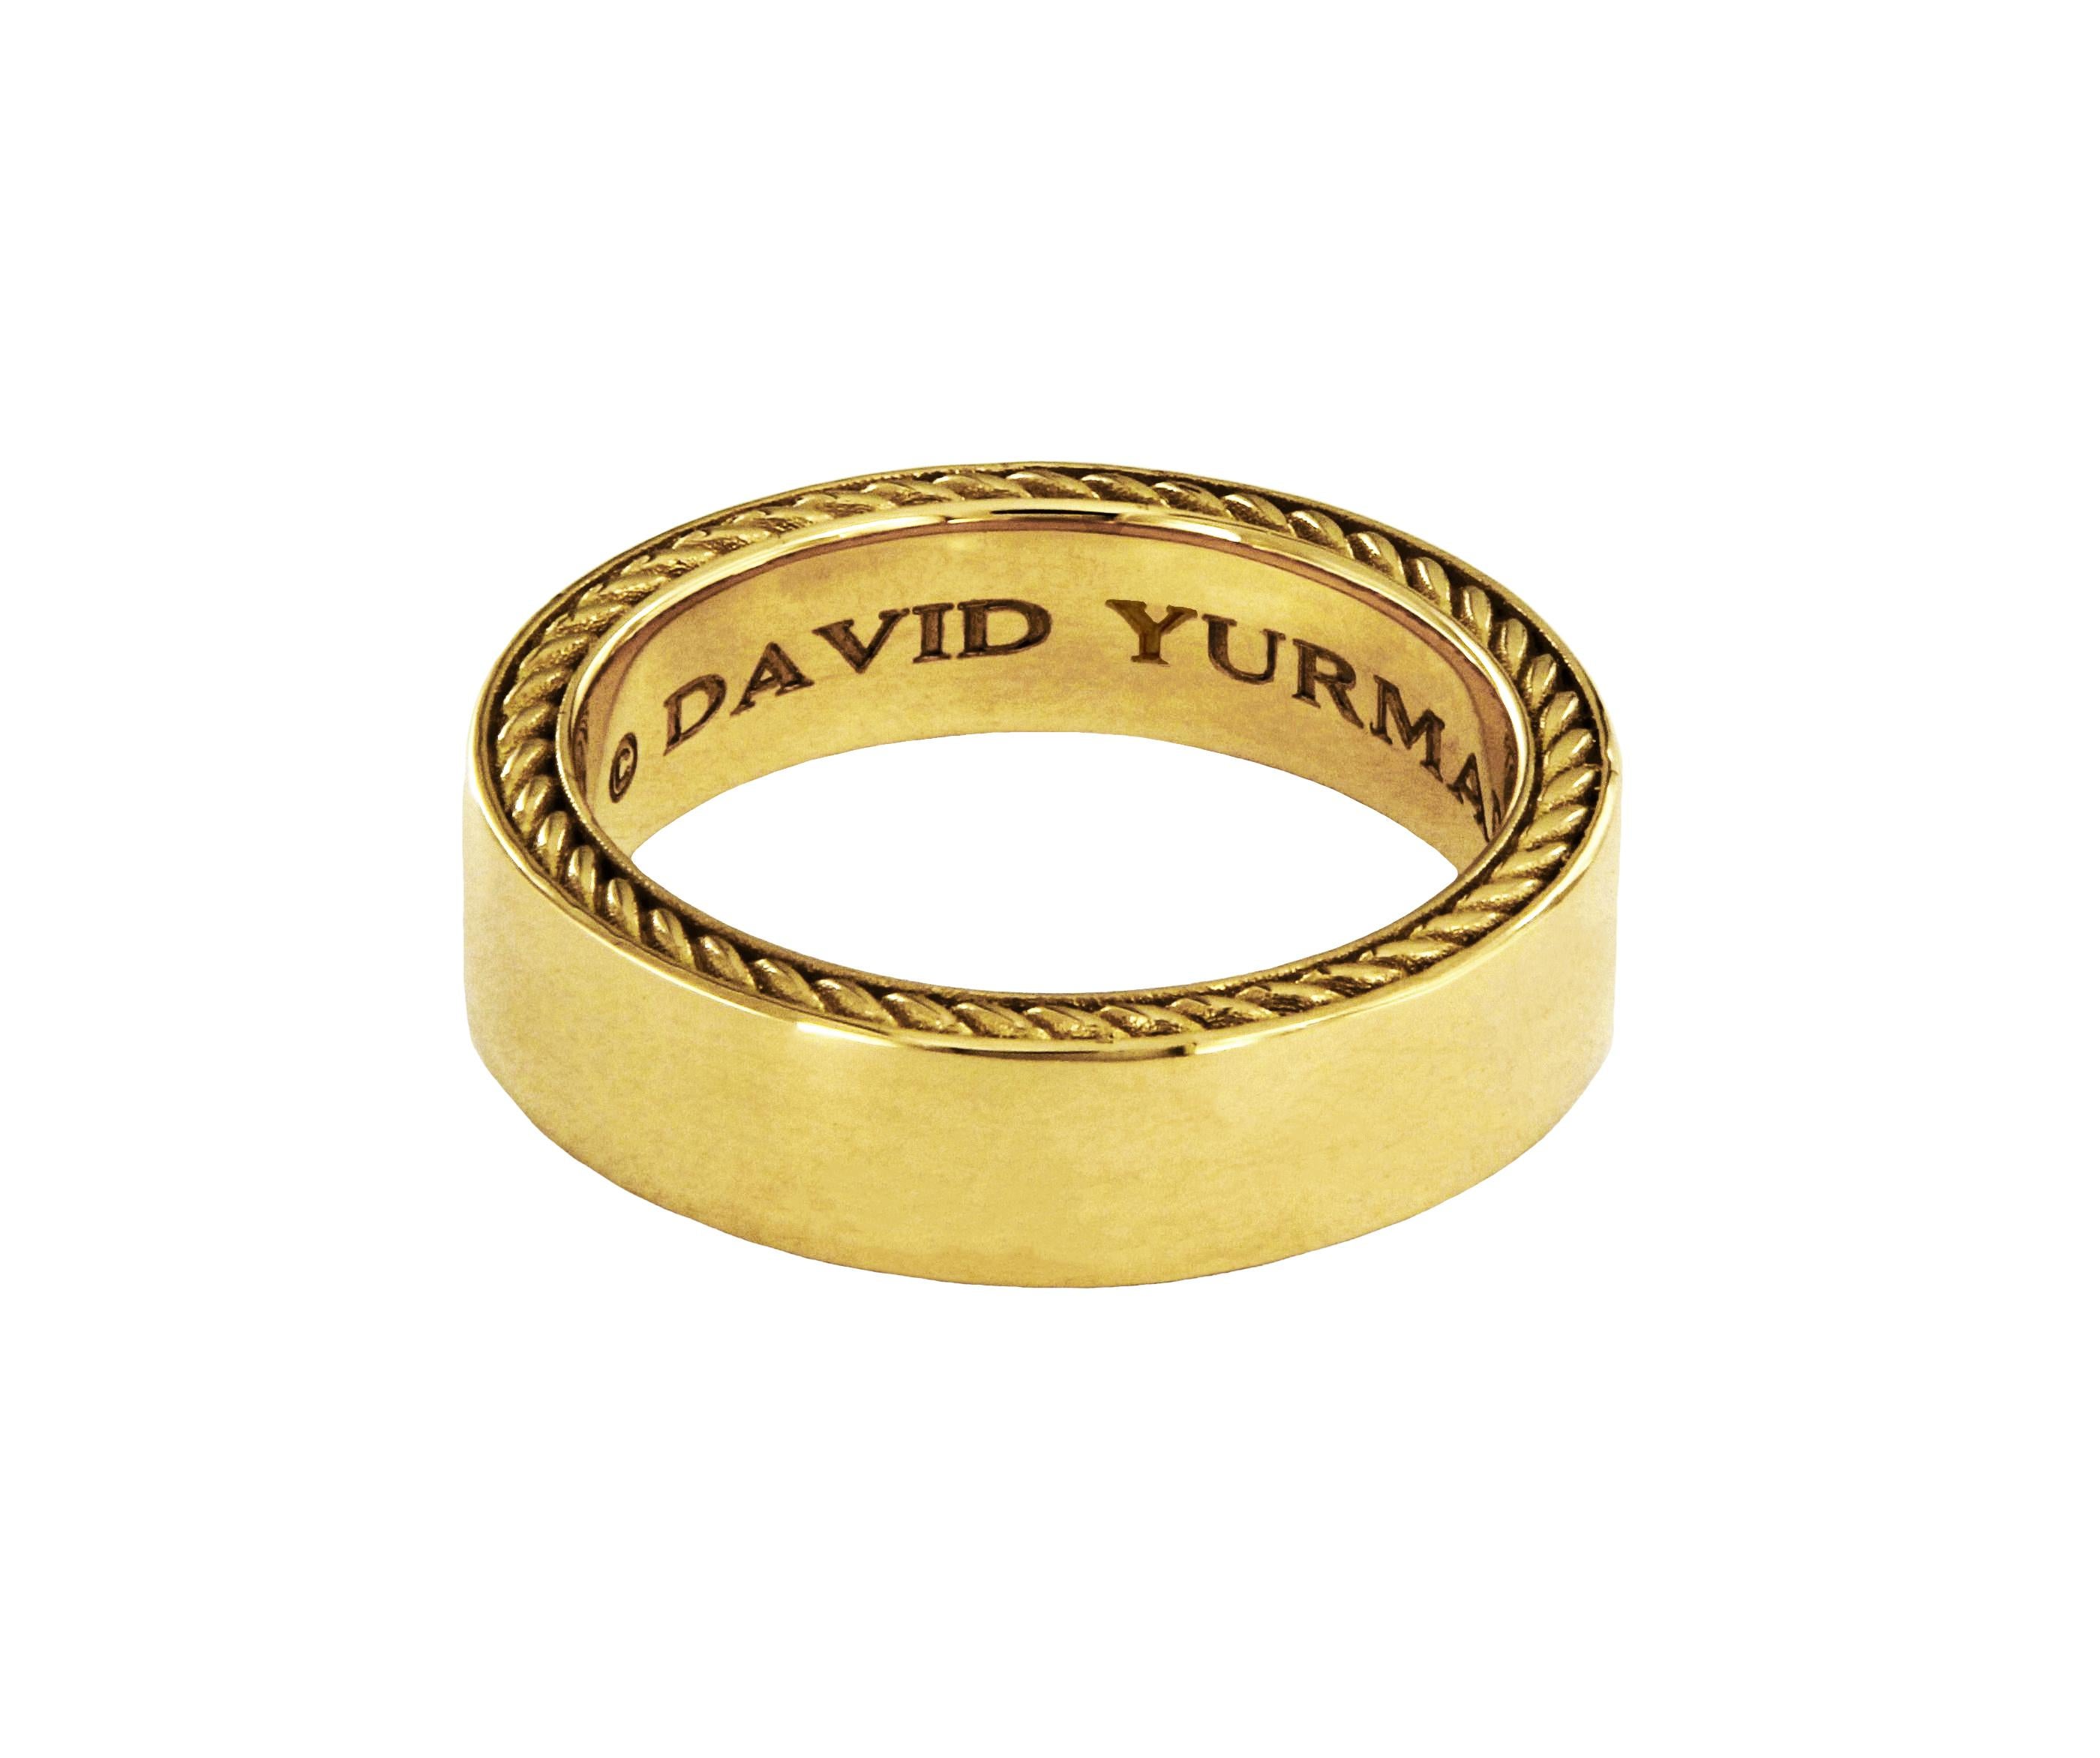 Collection Streamline. Bague pour homme.

or jaune 18 carats
Taille de l'anneau - 10.5
Anneau large - 6mm
Poids de l'anneau : 16gr
*Boîte David Yurman incluse.

